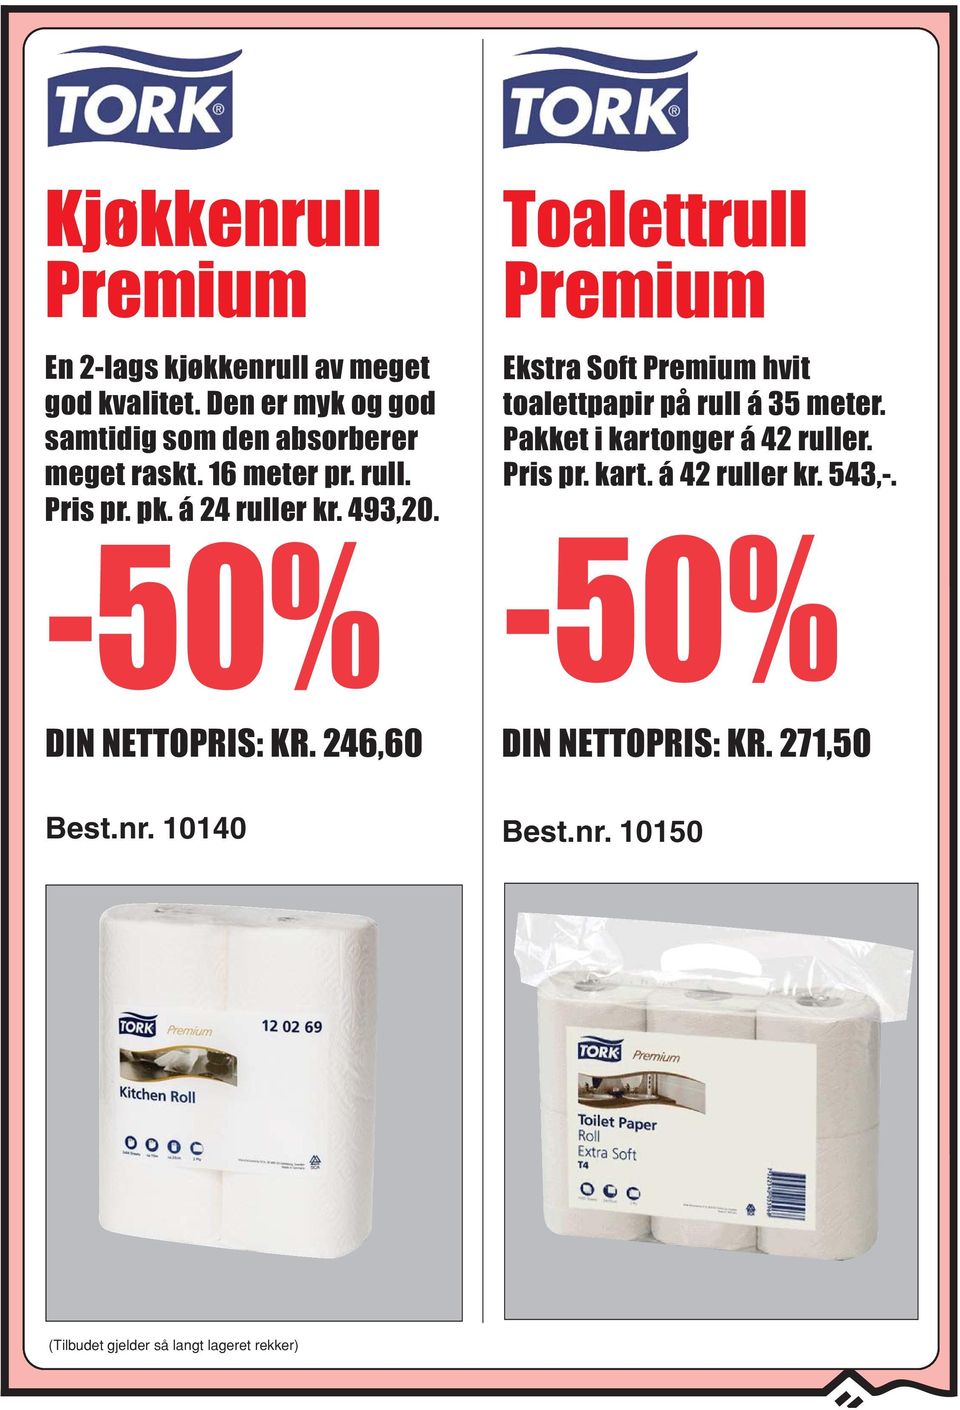 493,20. Toalettrull Premium Ekstra Soft Premium hvit toalettpapir på rull á 35 meter.